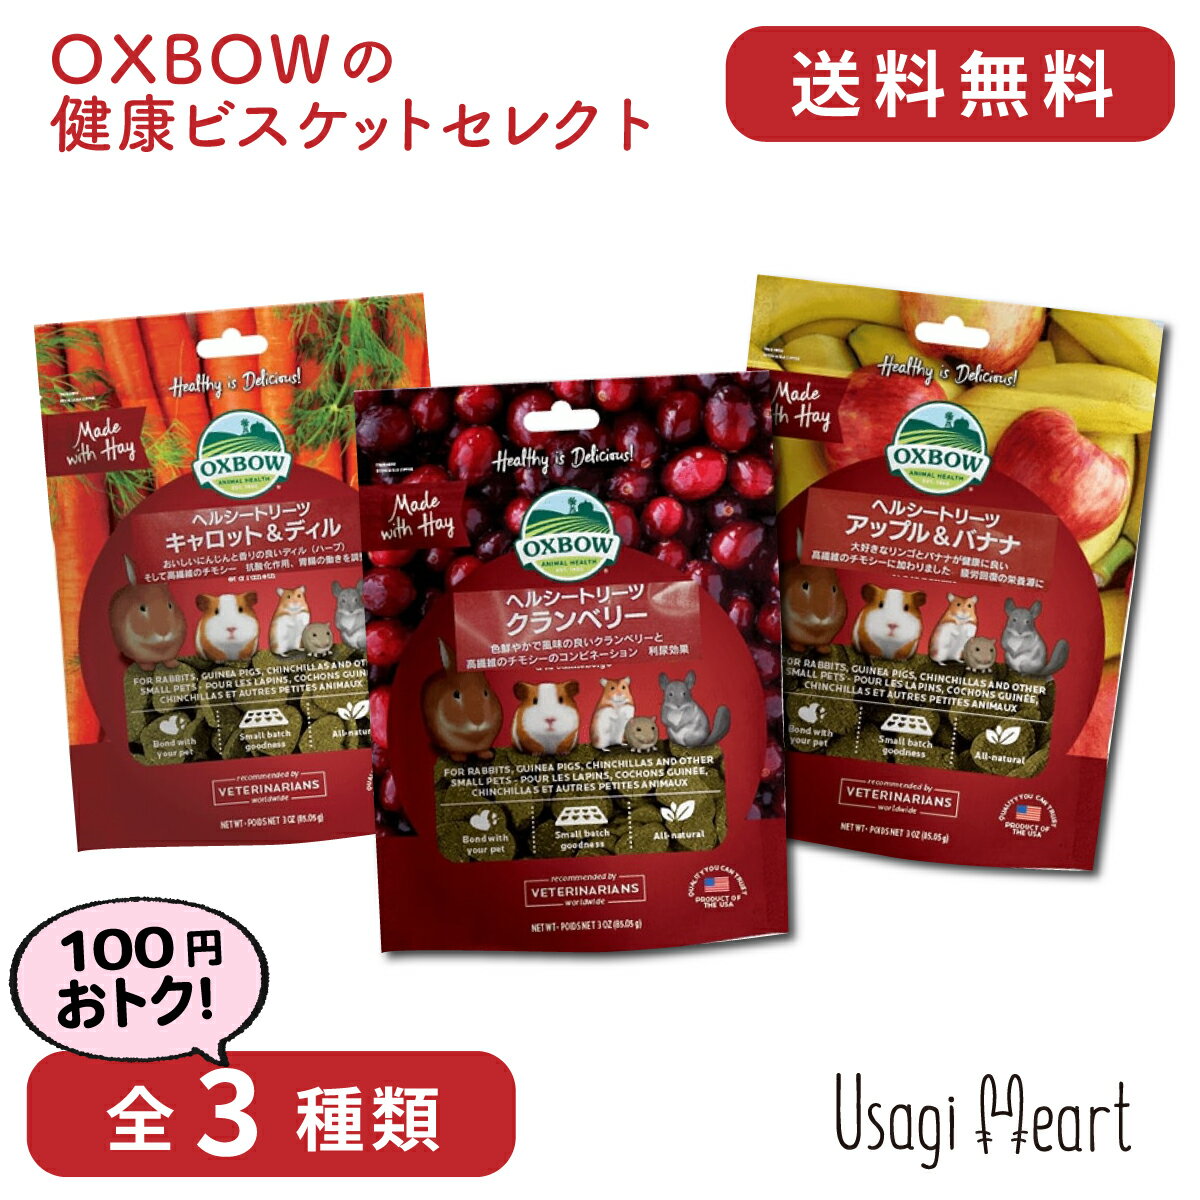 Usagi Heart OXBOWの健康ビスケットセレクト 全3種類 OXBOW オックスボウ オクスボウ おやつ うさぎのおやつ うさぎ ミニウサギ ネザーランドドワーフ ホーランドロップ ロップイヤー うさぎ全般 大容量 うさぎ用品 ウサギ